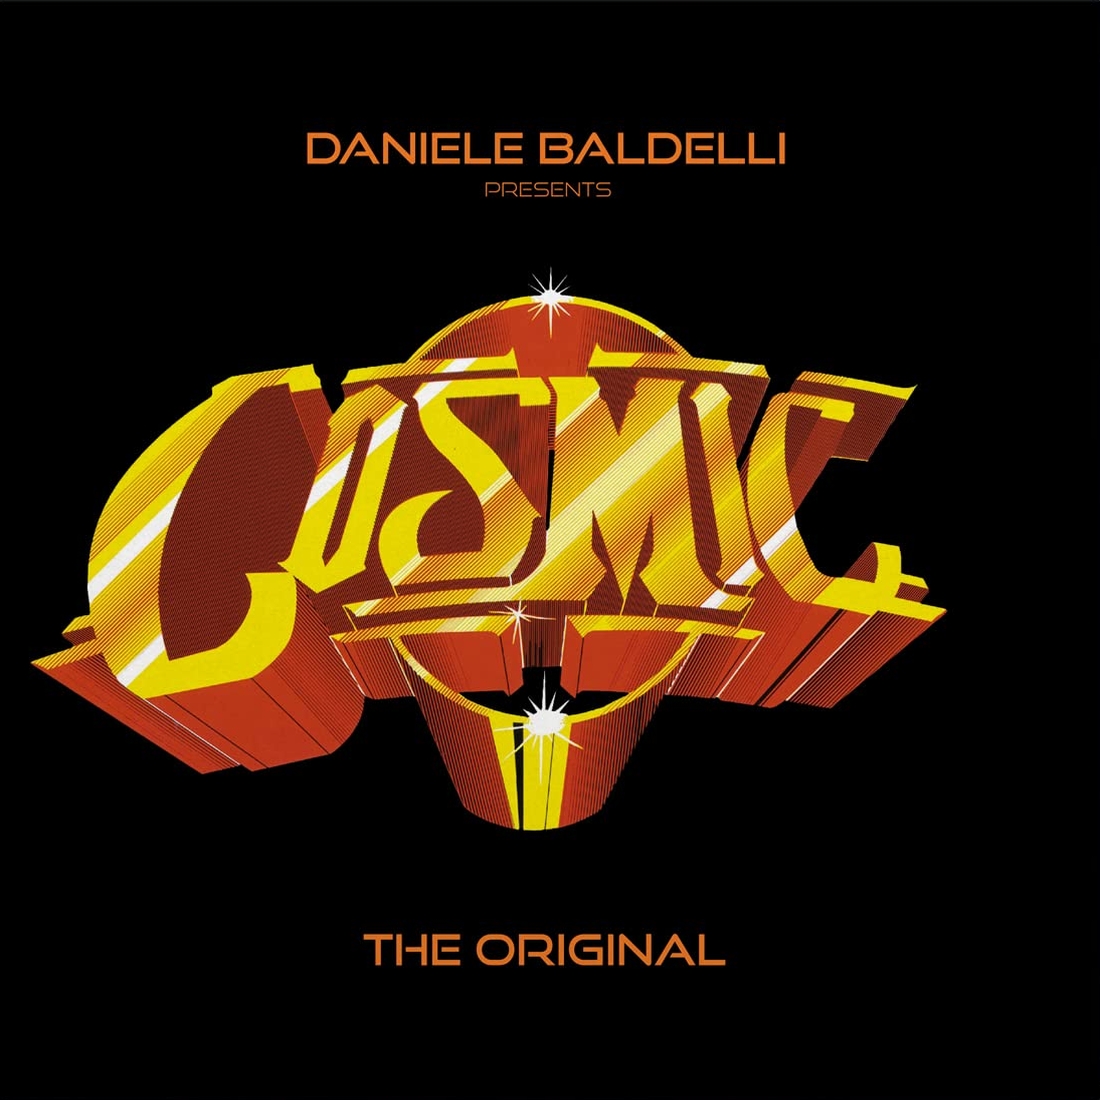 

Cosmic: The Original [LP] - VINYL